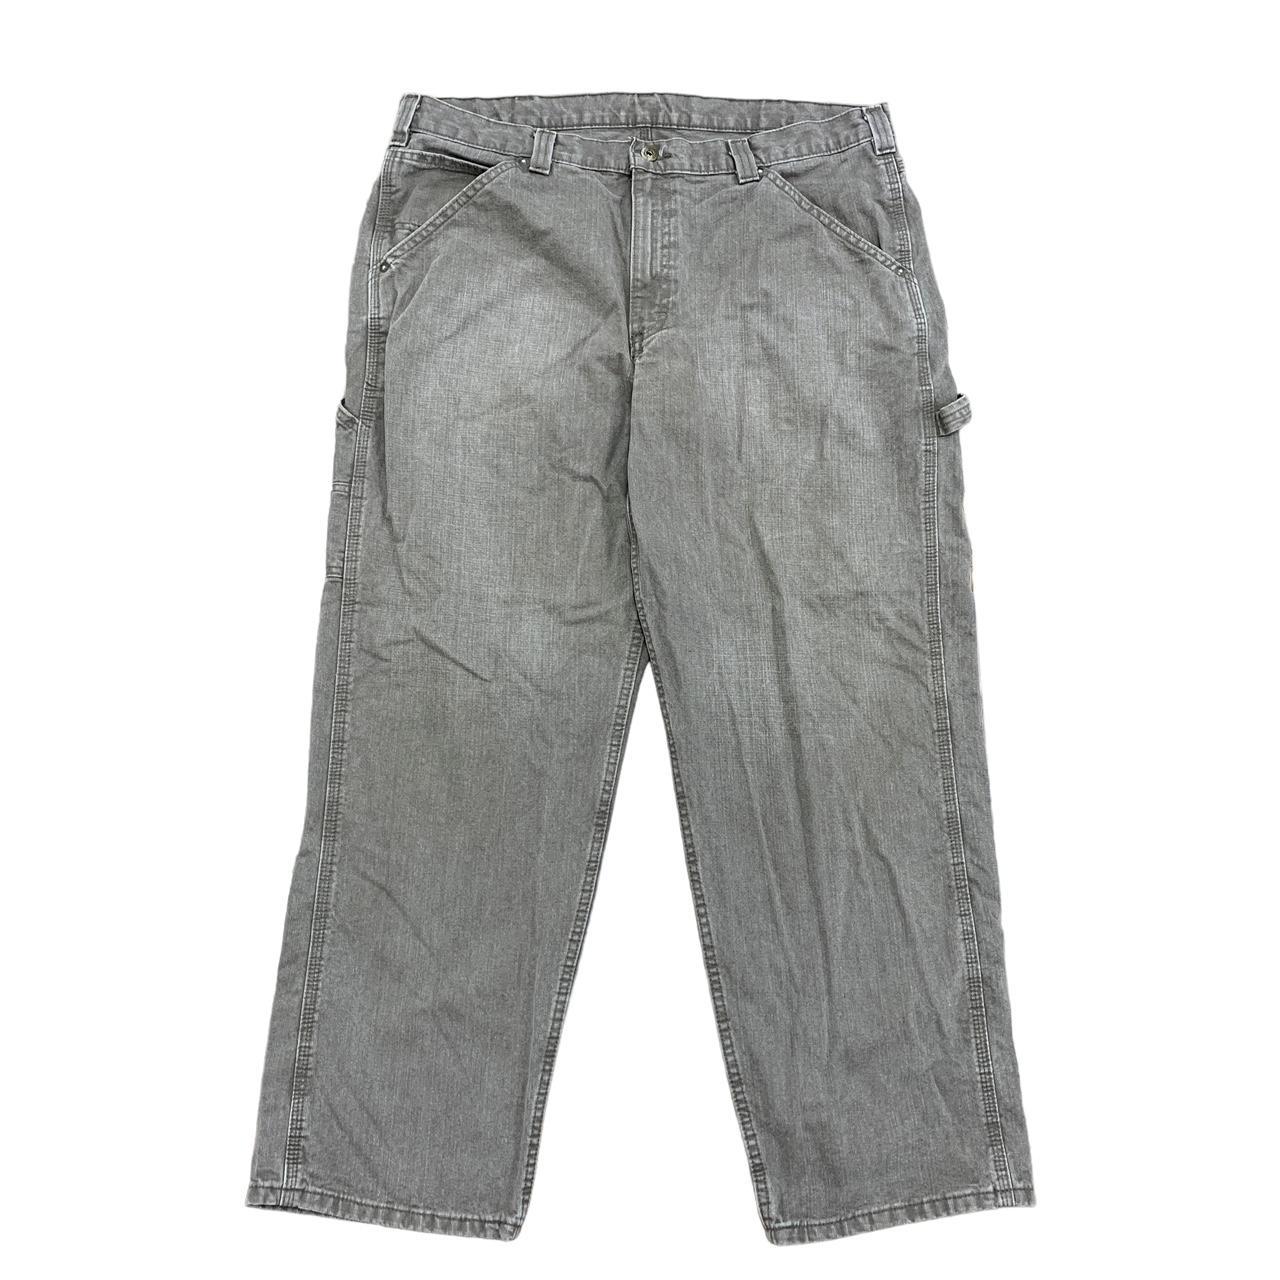 Vintage Lee Carpenter Jeans / Pants W38 L30 Washed... - Depop